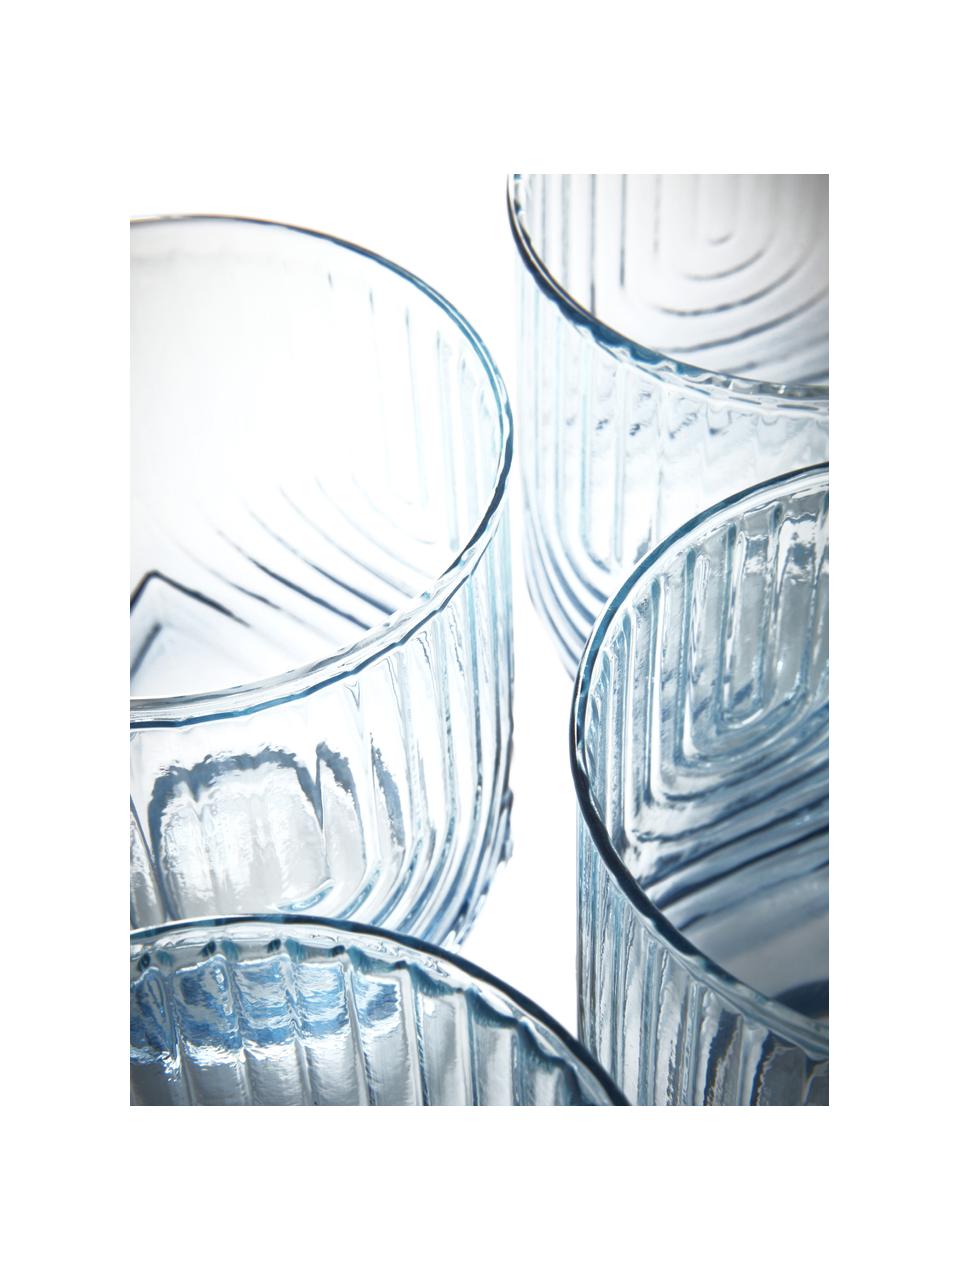 Bicchiere acqua con sfumatura blu/trasparente Imani 4 pz, Vetro, Blu, trasparente, Ø 9 x Alt. 10 cm, 400 ml